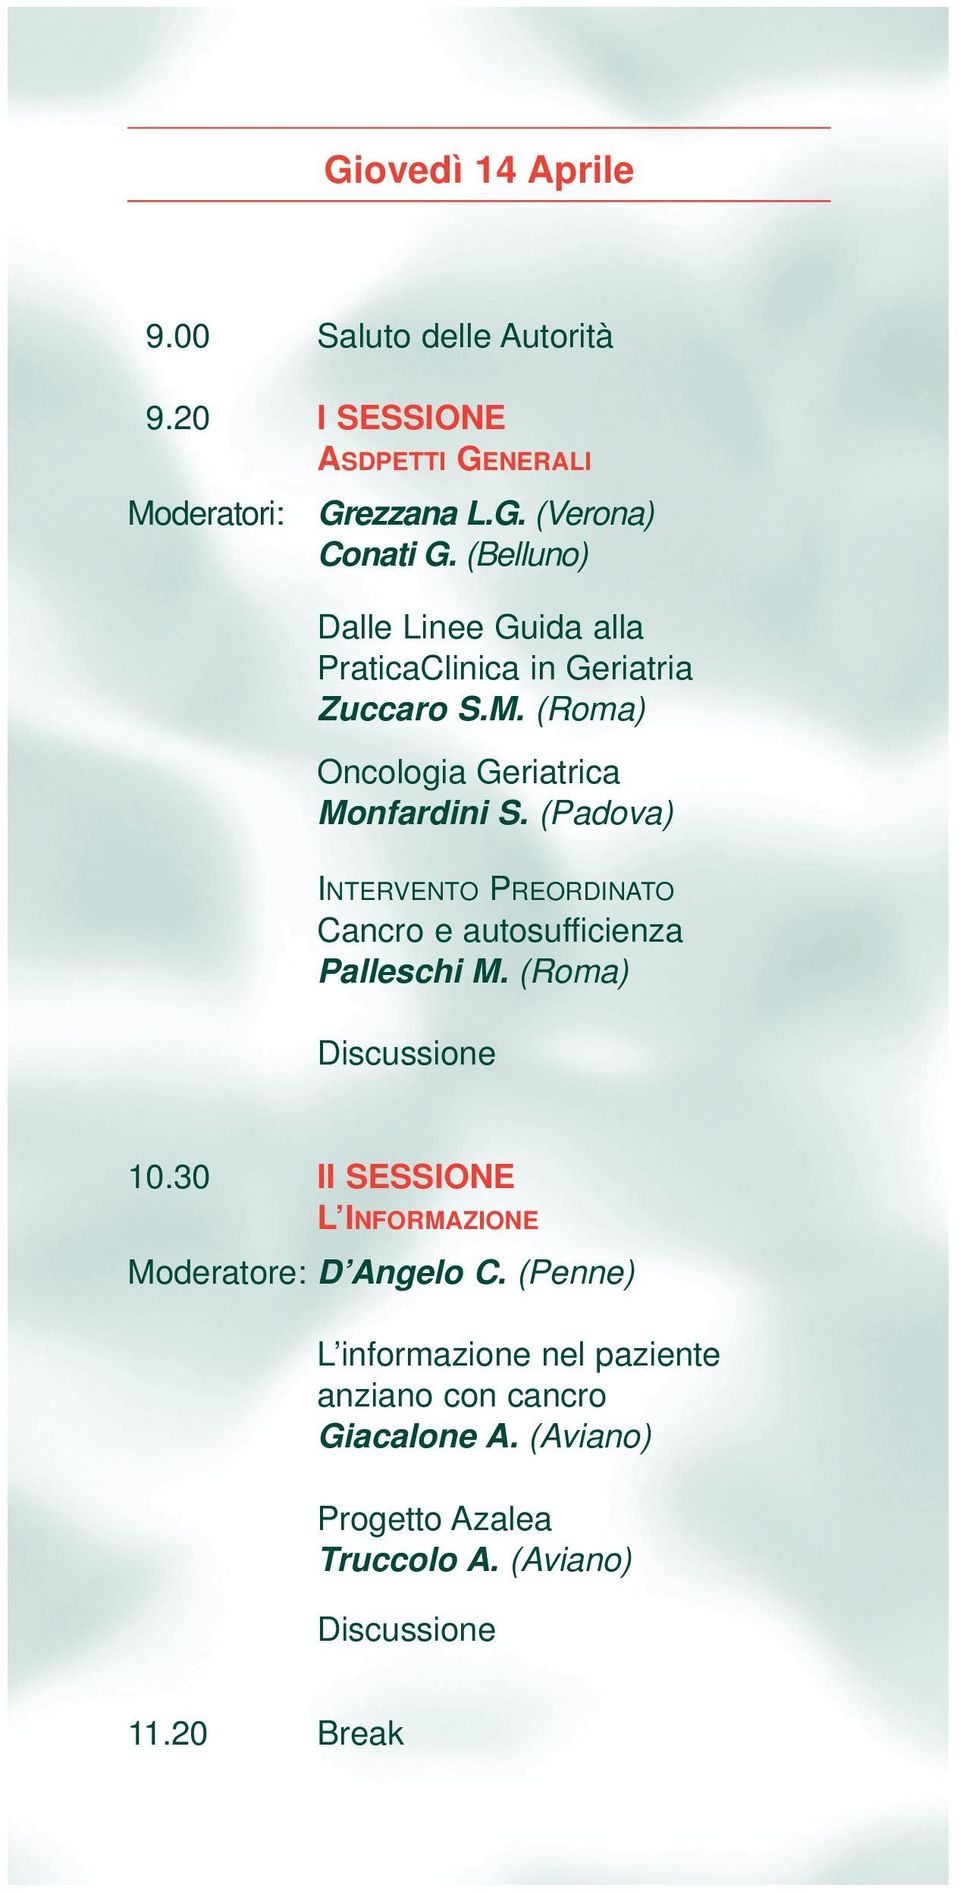 (Padova) INTERVENTO PREORDINATO Cancro e autosufficienza Palleschi M. (Roma) Discussione 10.